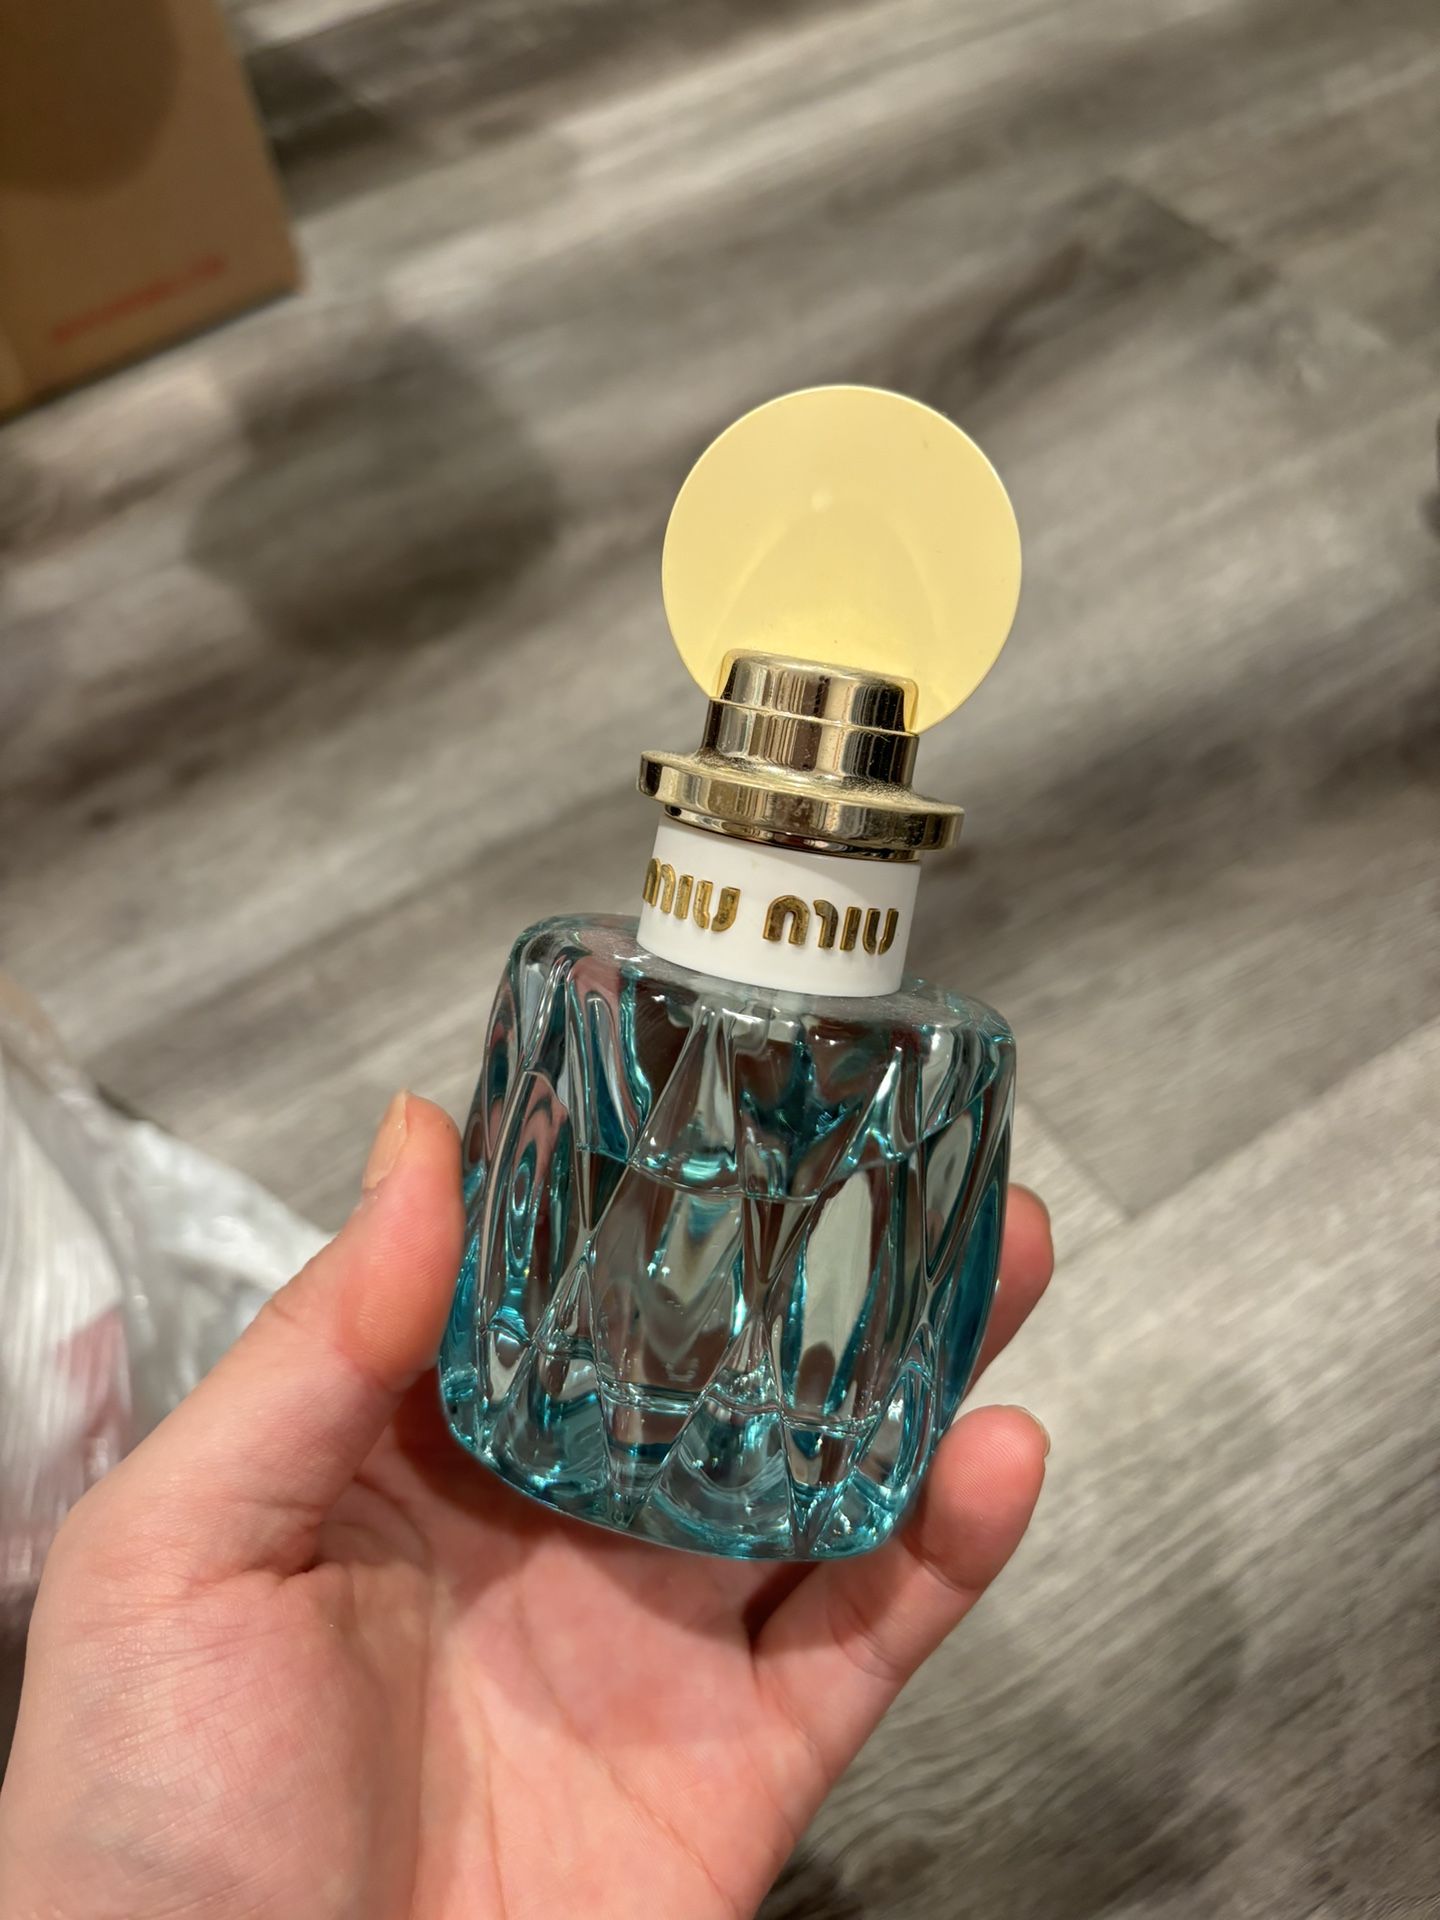 Miu Miu L’Eau Bleue perfume